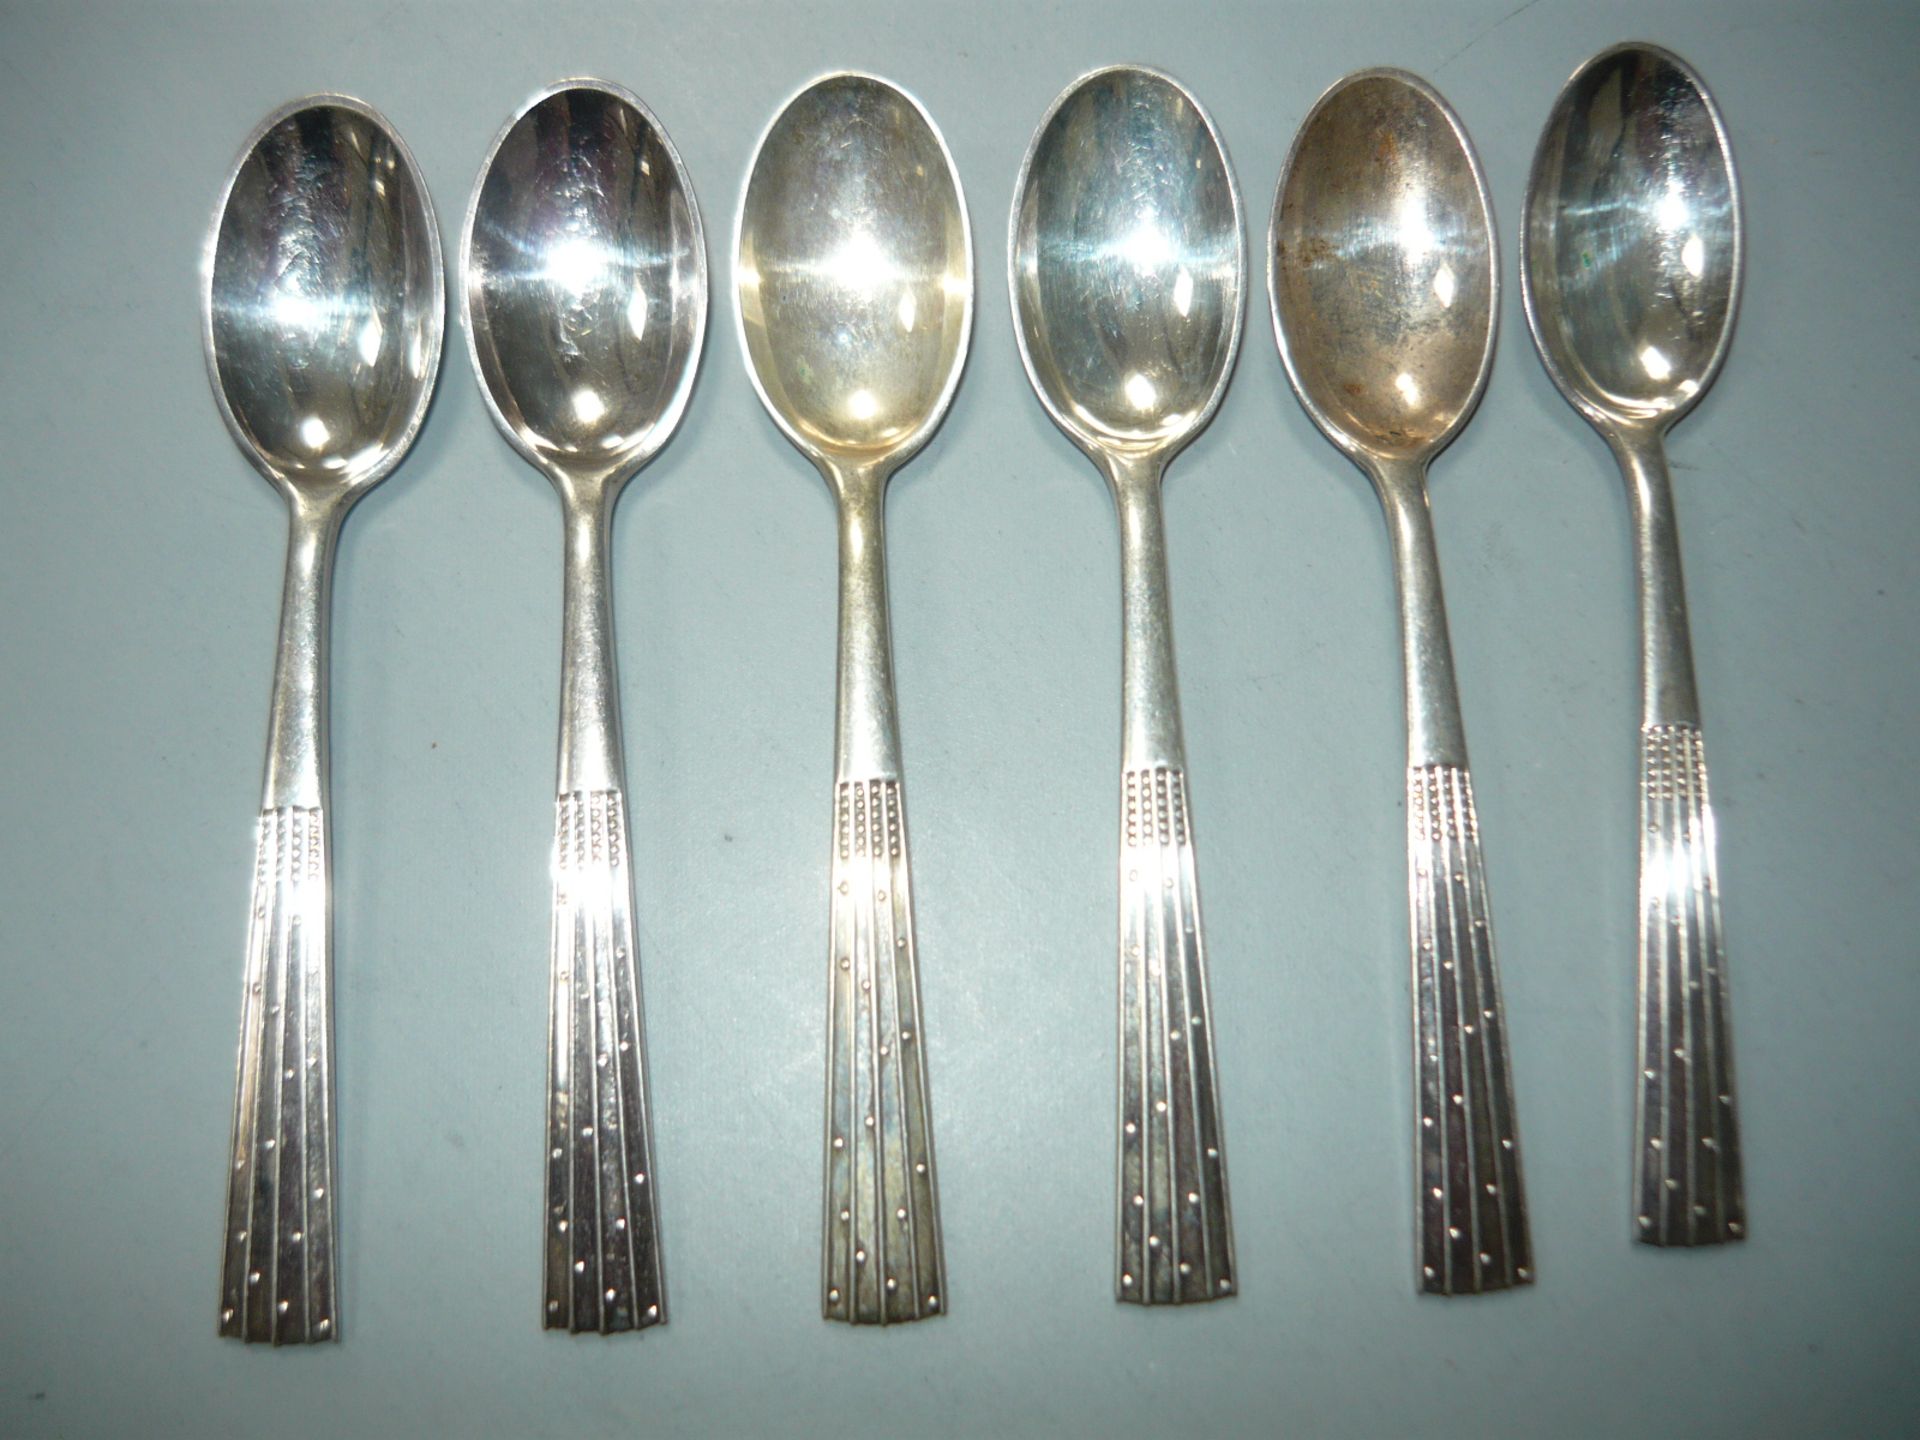 Satz von 6 dänischen Silberlöffeln. 830er Silber. English: Set of 6 danish spoons in 830 silver.